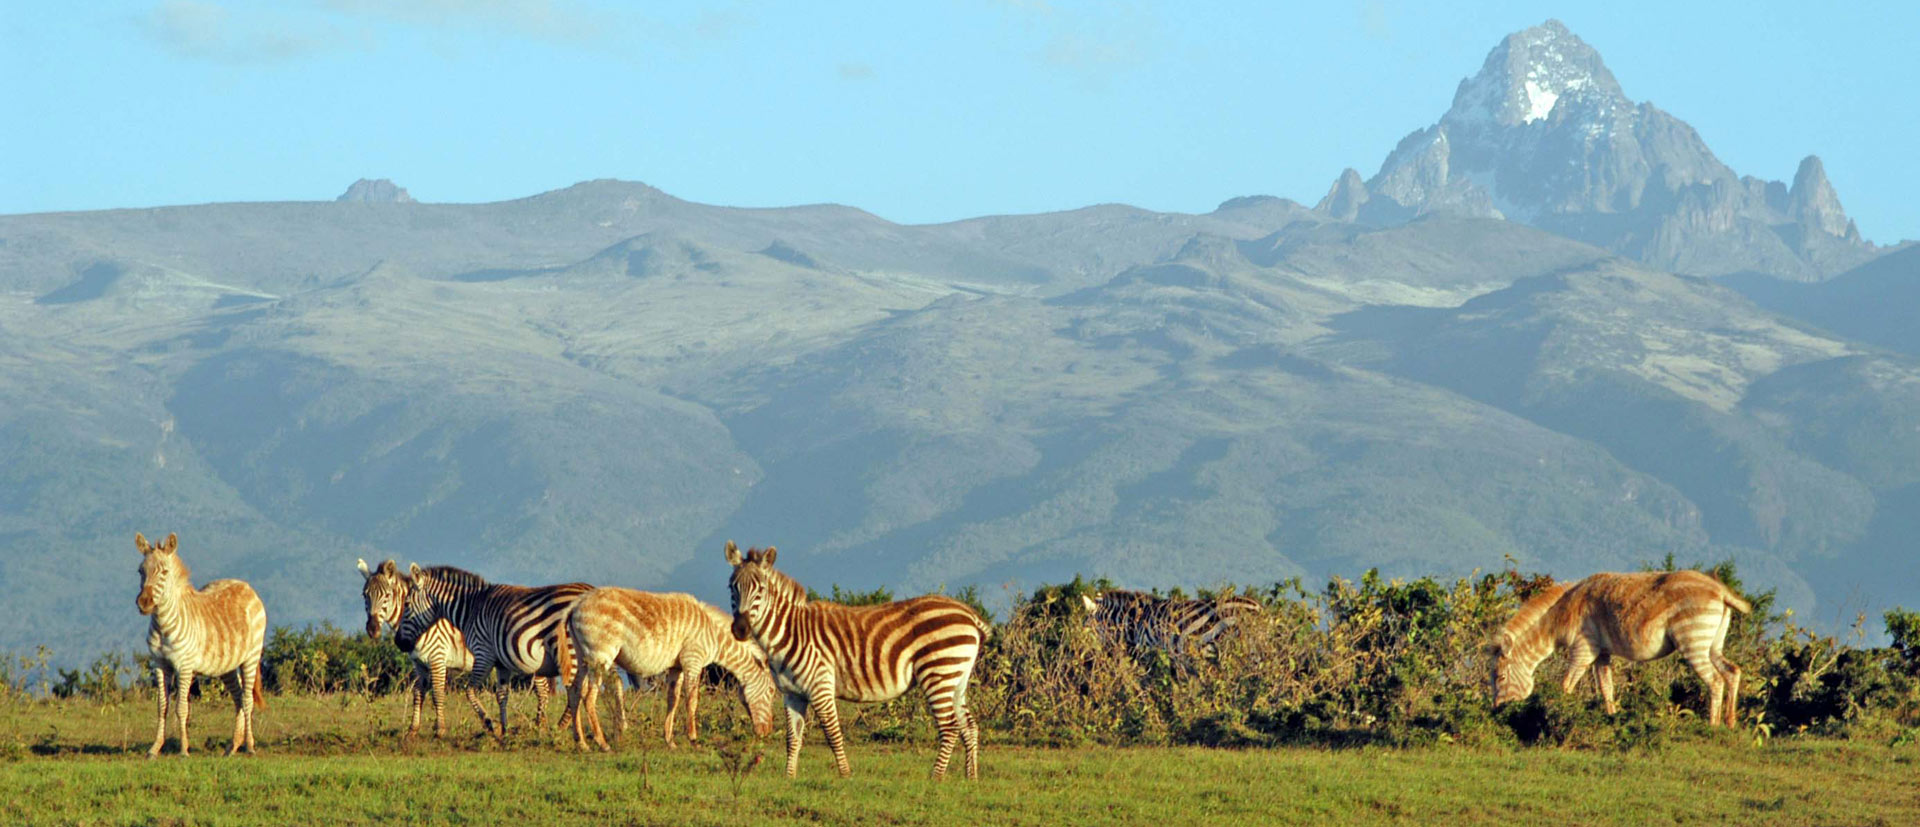 Fauna and Flora of Mount Kenya